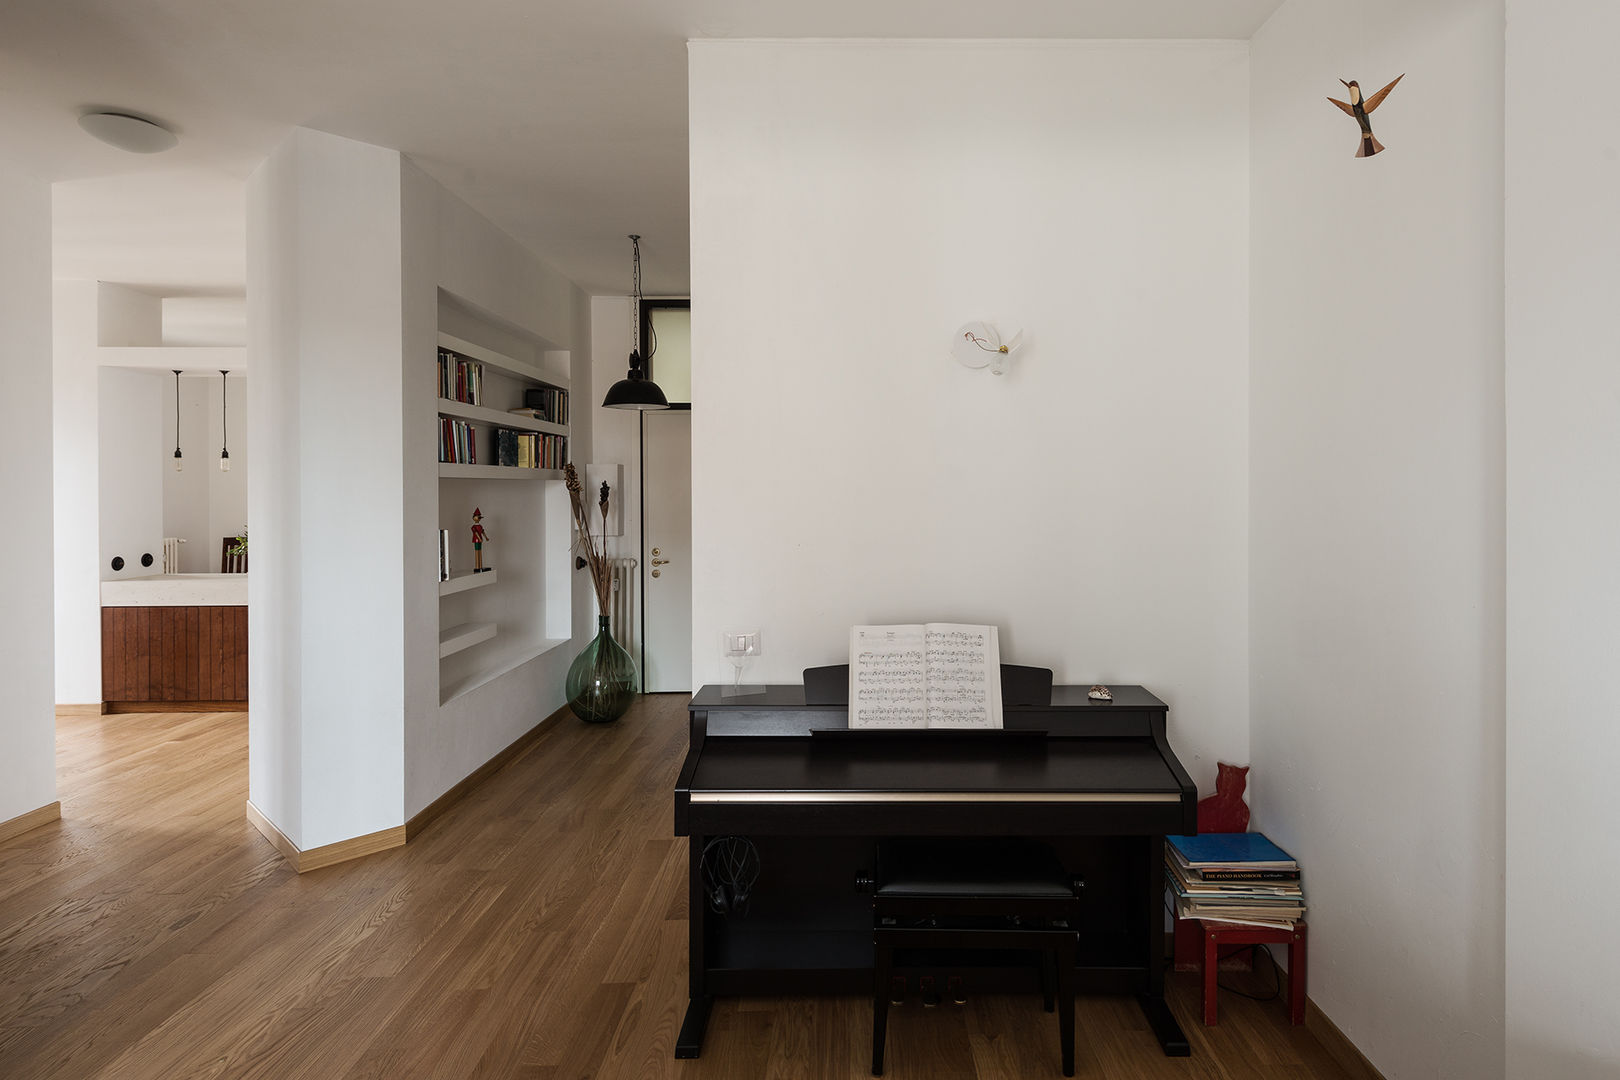 Woodboard House: Wohnungsrenovierung mit Charme, Atelier Blank Atelier Blank Pasillos, vestíbulos y escaleras minimalistas